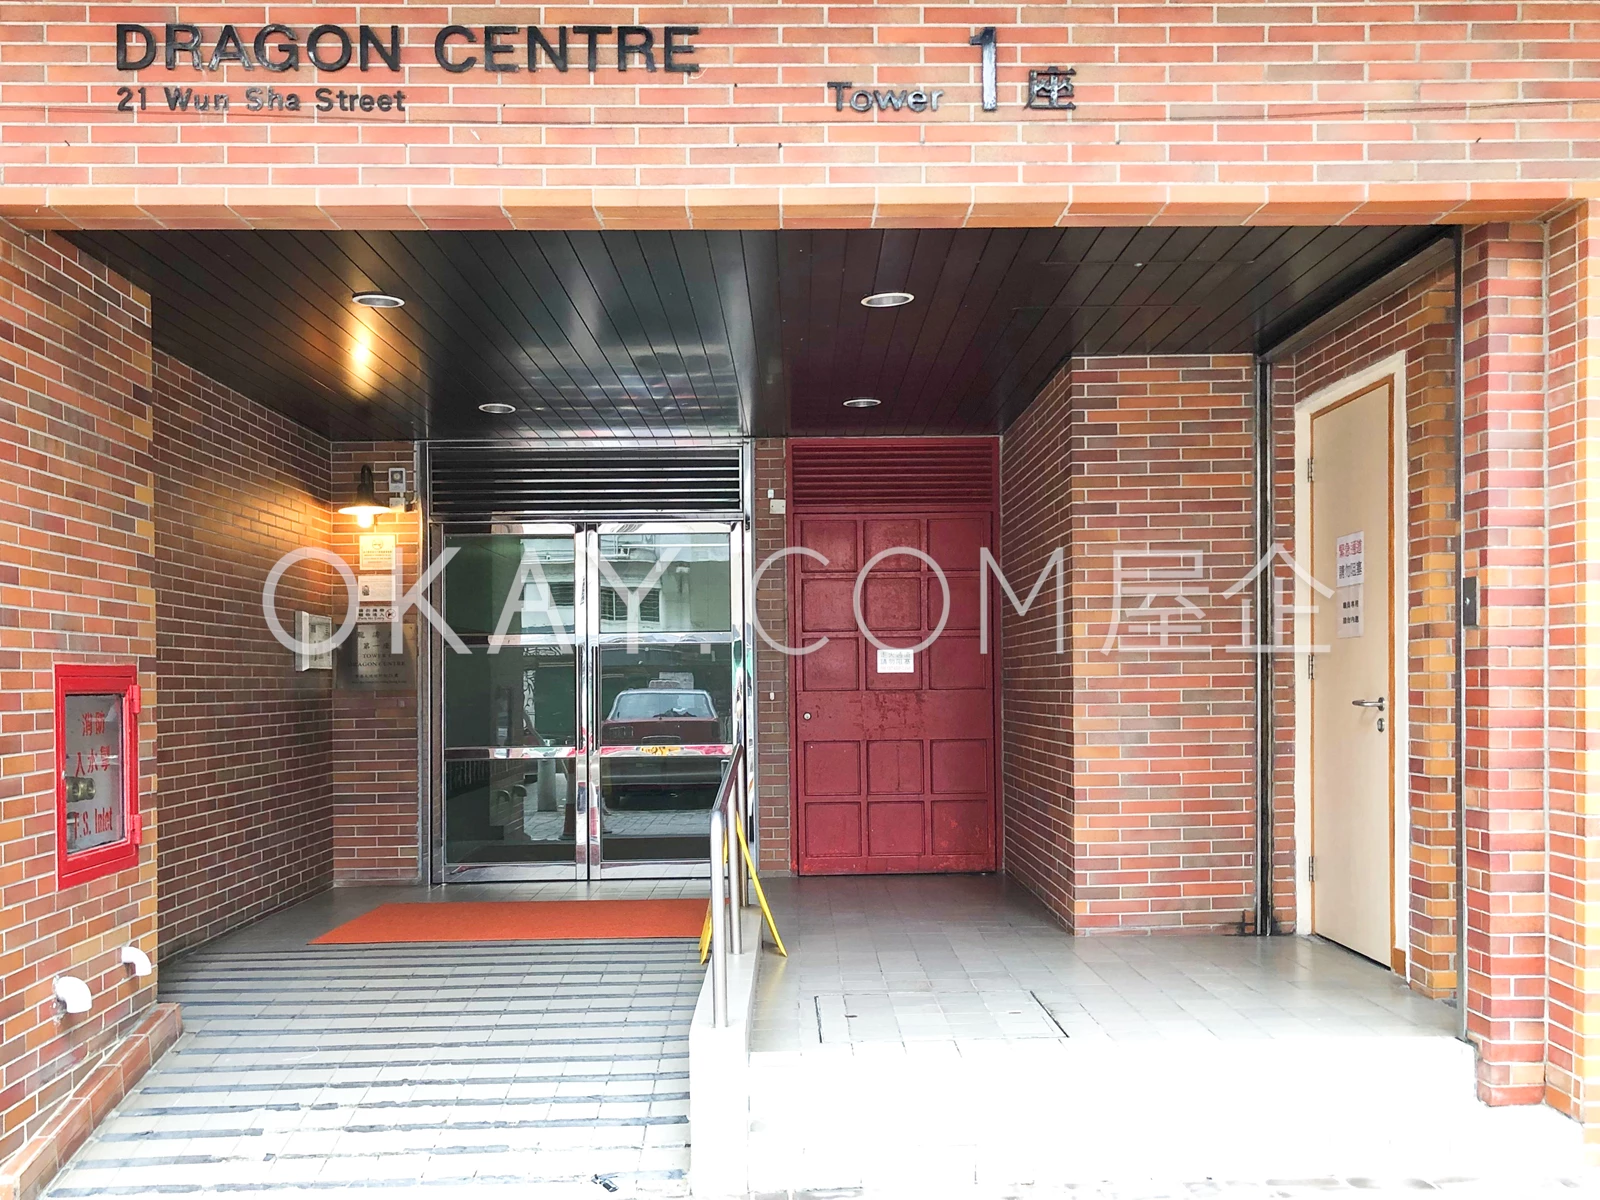 Dragon Centre